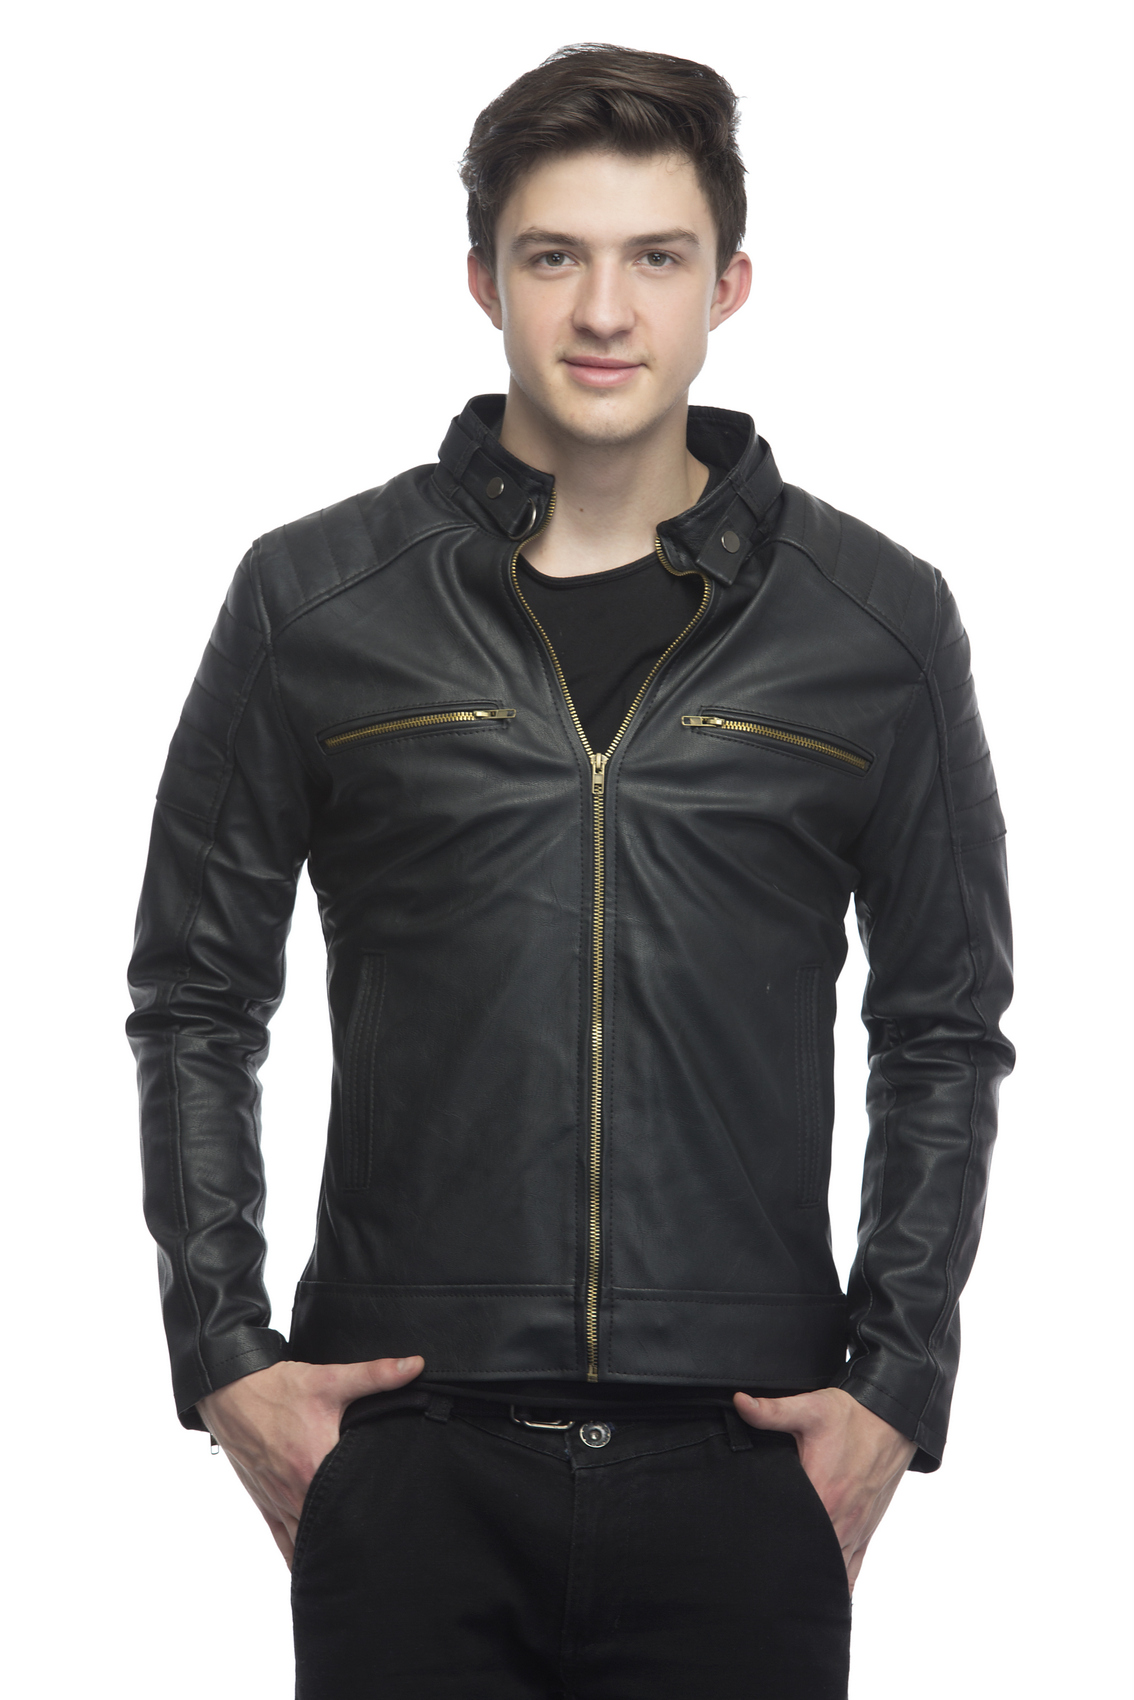 Buy Emblazon Men's Black Casual Jacket Online - Get 77% Off